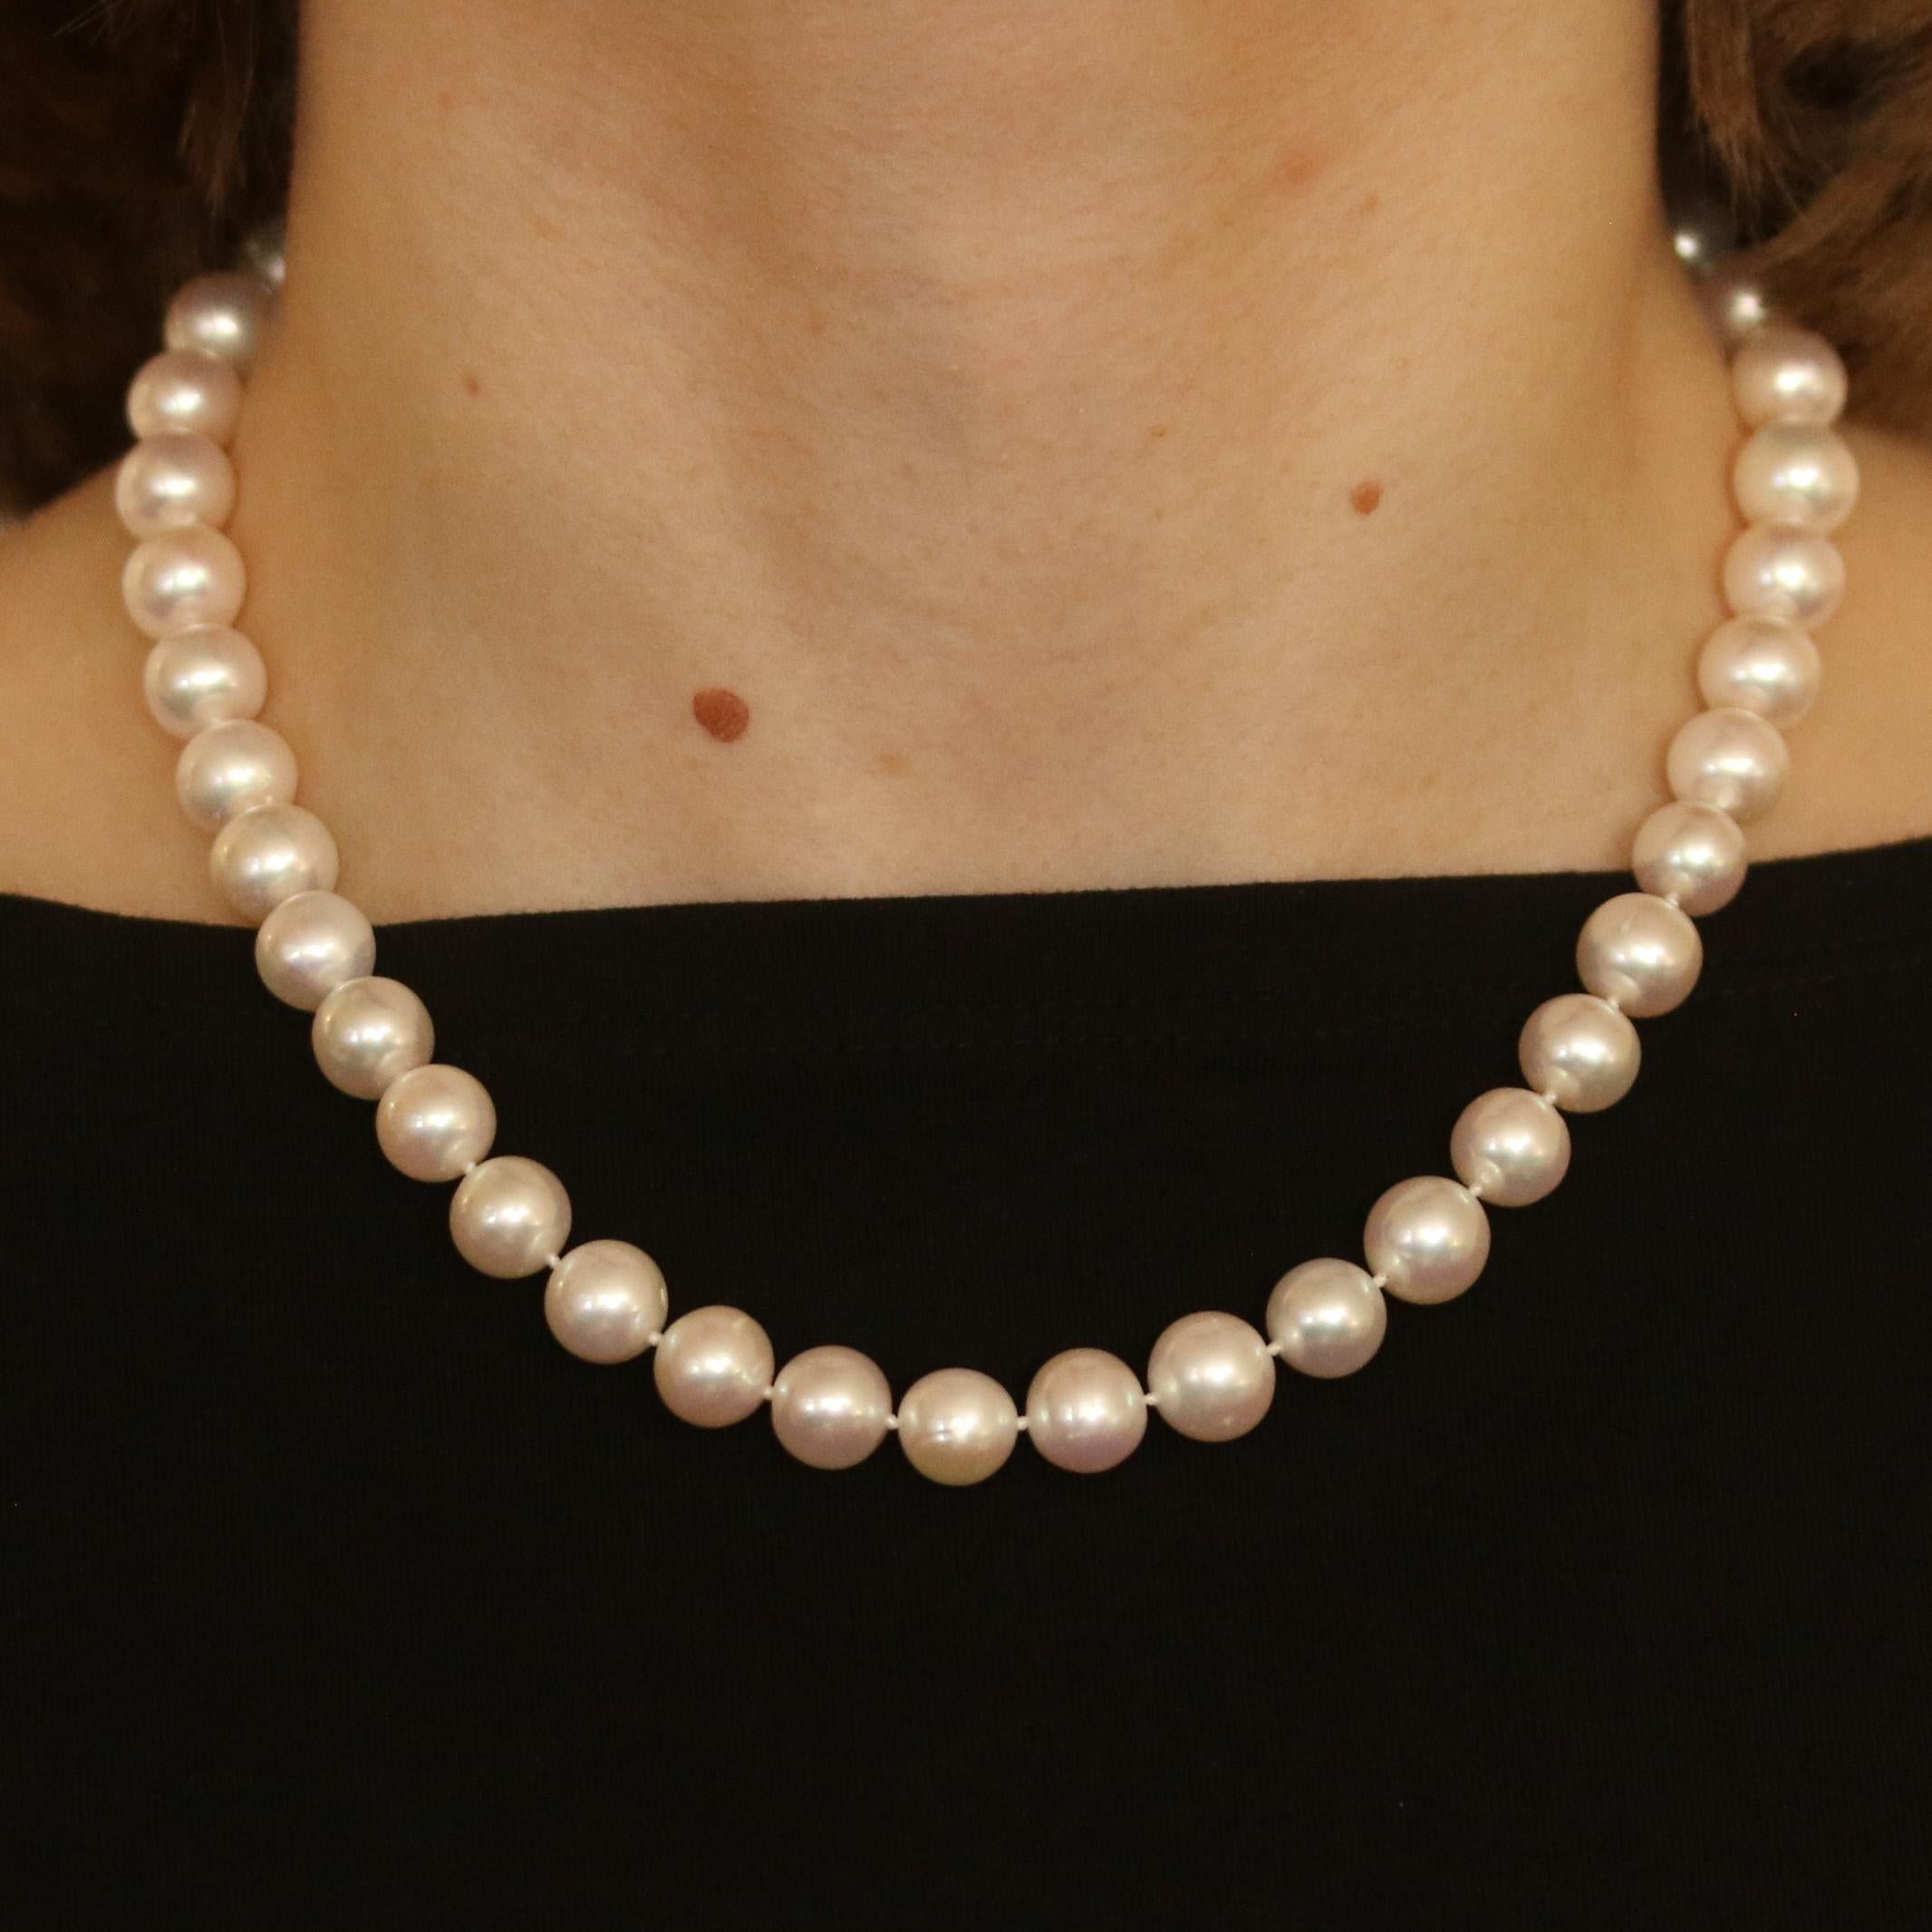 Verleihen Sie jedem Outfit einen Hauch von Klasse mit dieser wunderschönen Perlenkette. Die klassische Perlenkette ist mit echten großen runden weißen Perlen mit einer durchschnittlichen Größe von 10 mm besetzt. Die Perlen sind an einer weißen